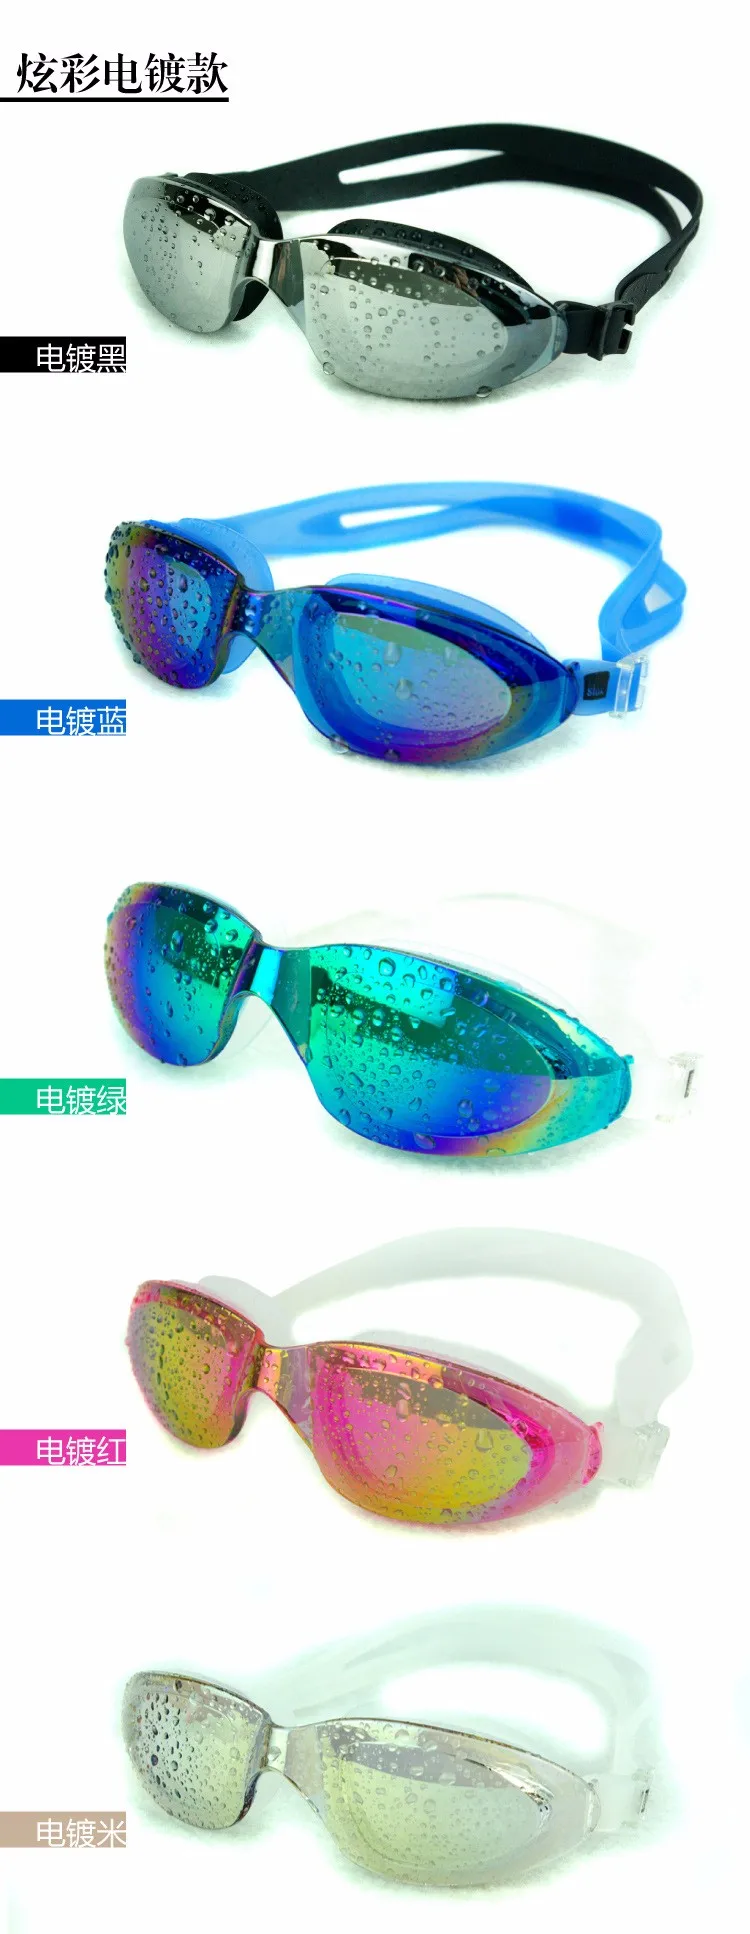 H662 Аутентичные гальванических водонепроницаемые очки для плавания Анти-туман очки с защитой от ультрафиолета разные цвета